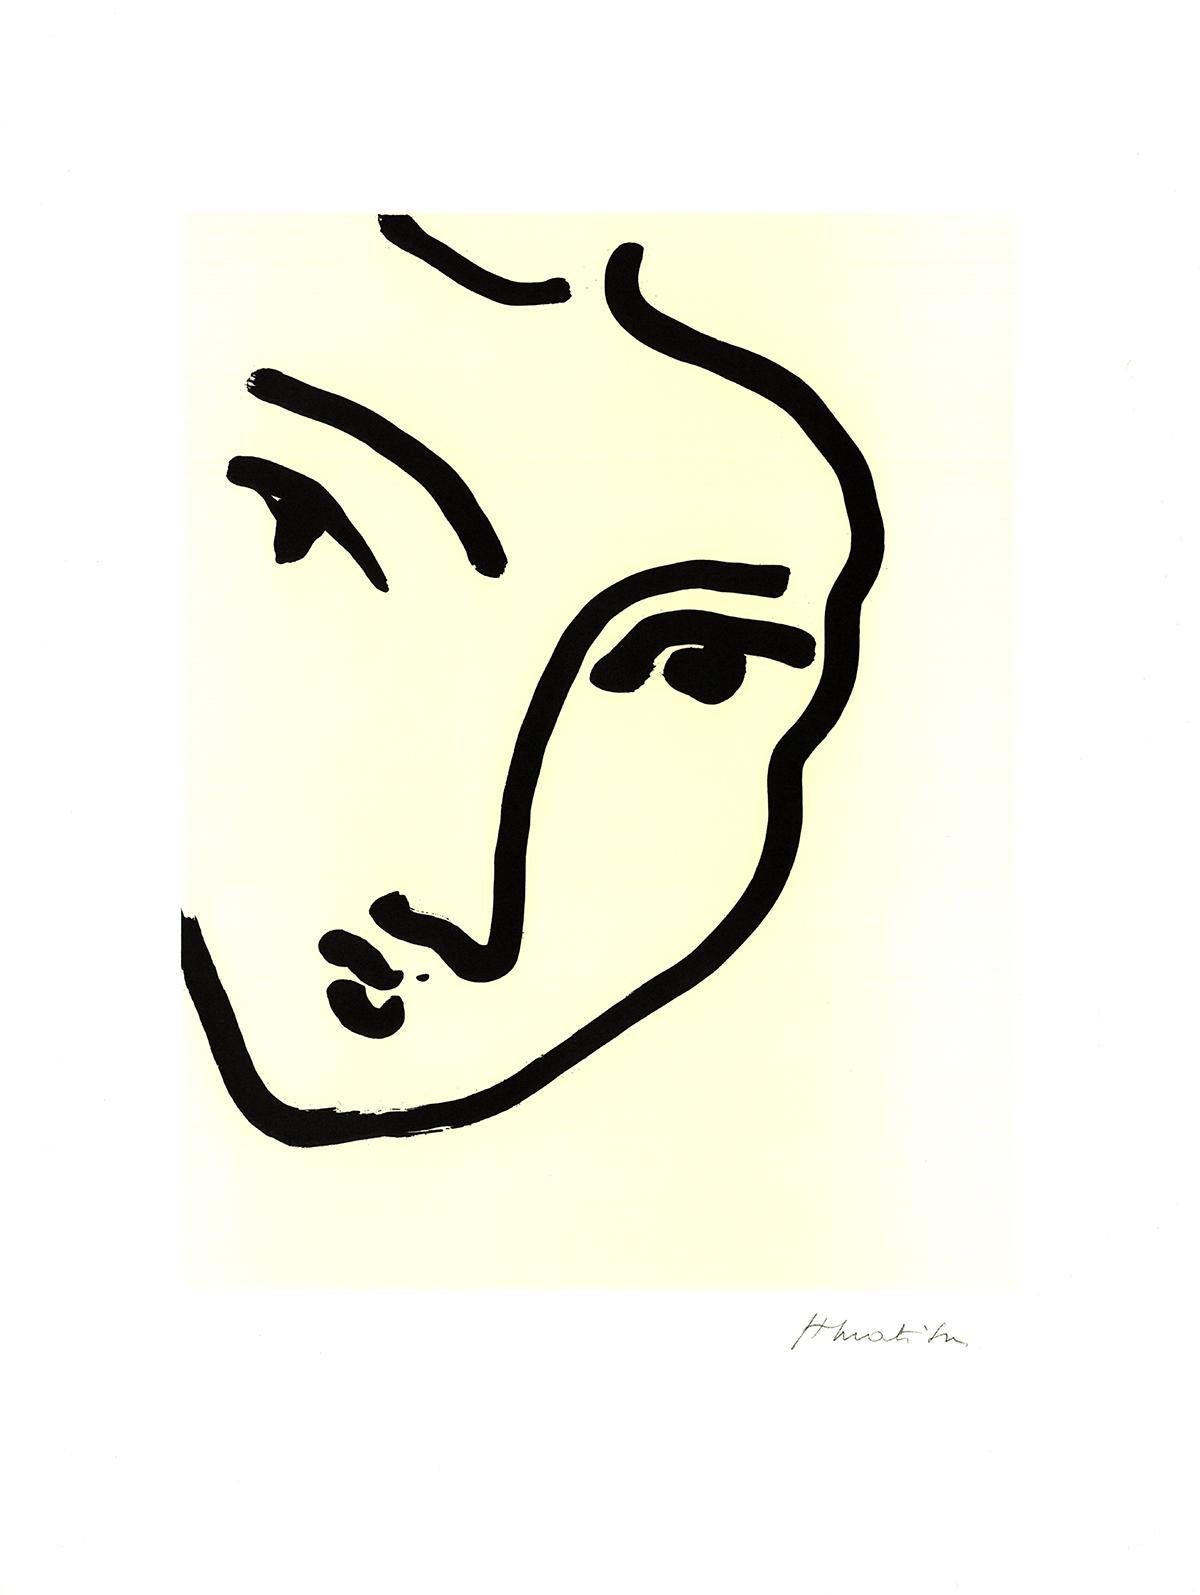 Sku: R176
Künstler: Henri Matisse
Titel: Nadia Au Menton Pointu
Jahr: 1995
Unterschrieben: Nein
Medium: Offset-Lithographie
Papierformat: 23,5 x 17,5 Zoll (59,69 x 44,45 cm)
Bildgröße: 16 x 12,25 Zoll (40,64 x 31,115 cm)
Auflagenhöhe: 2500
Gerahmt: